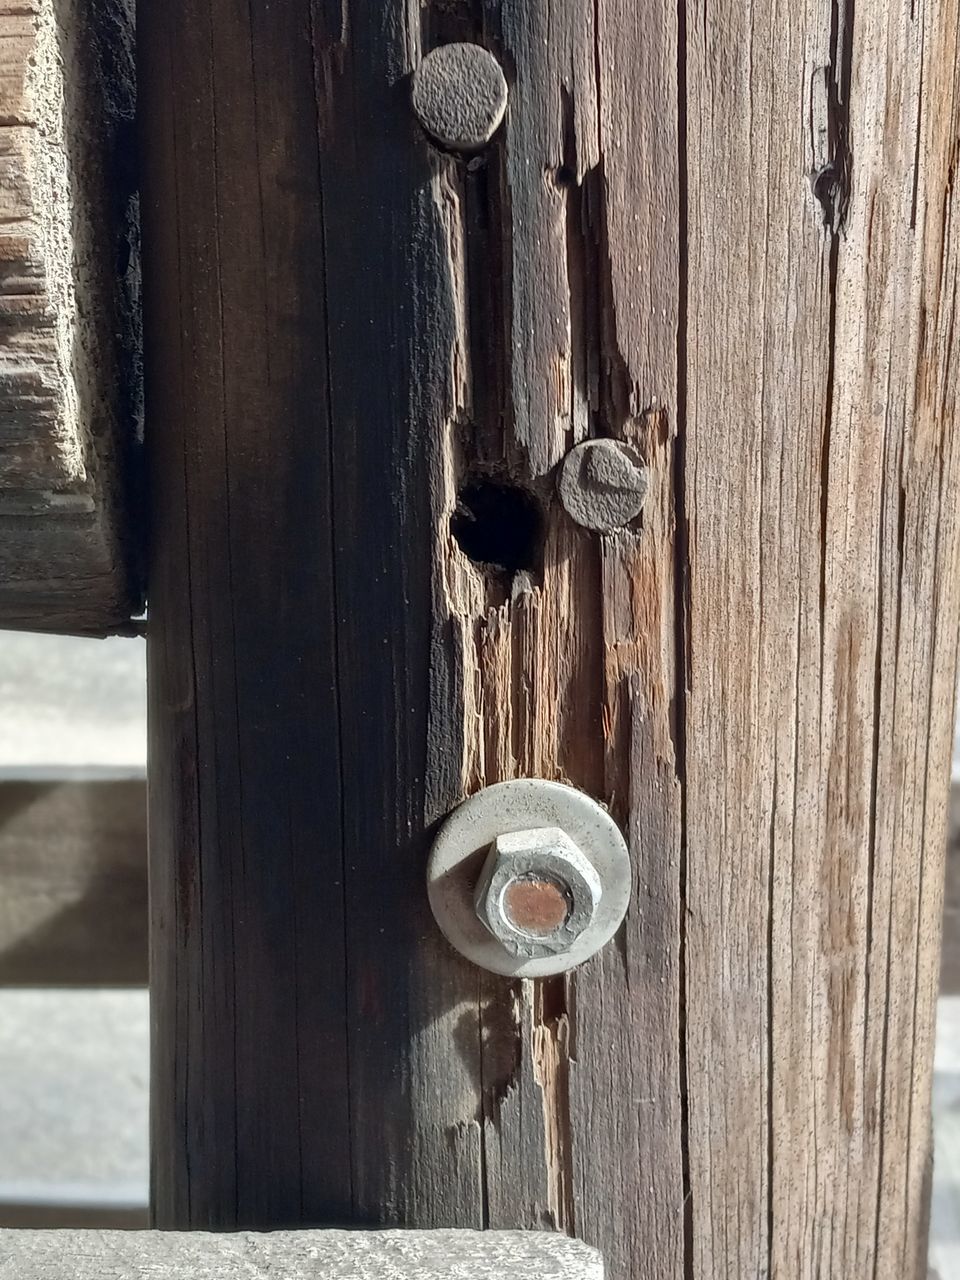 CLOSE-UP OF OLD WOODEN DOOR